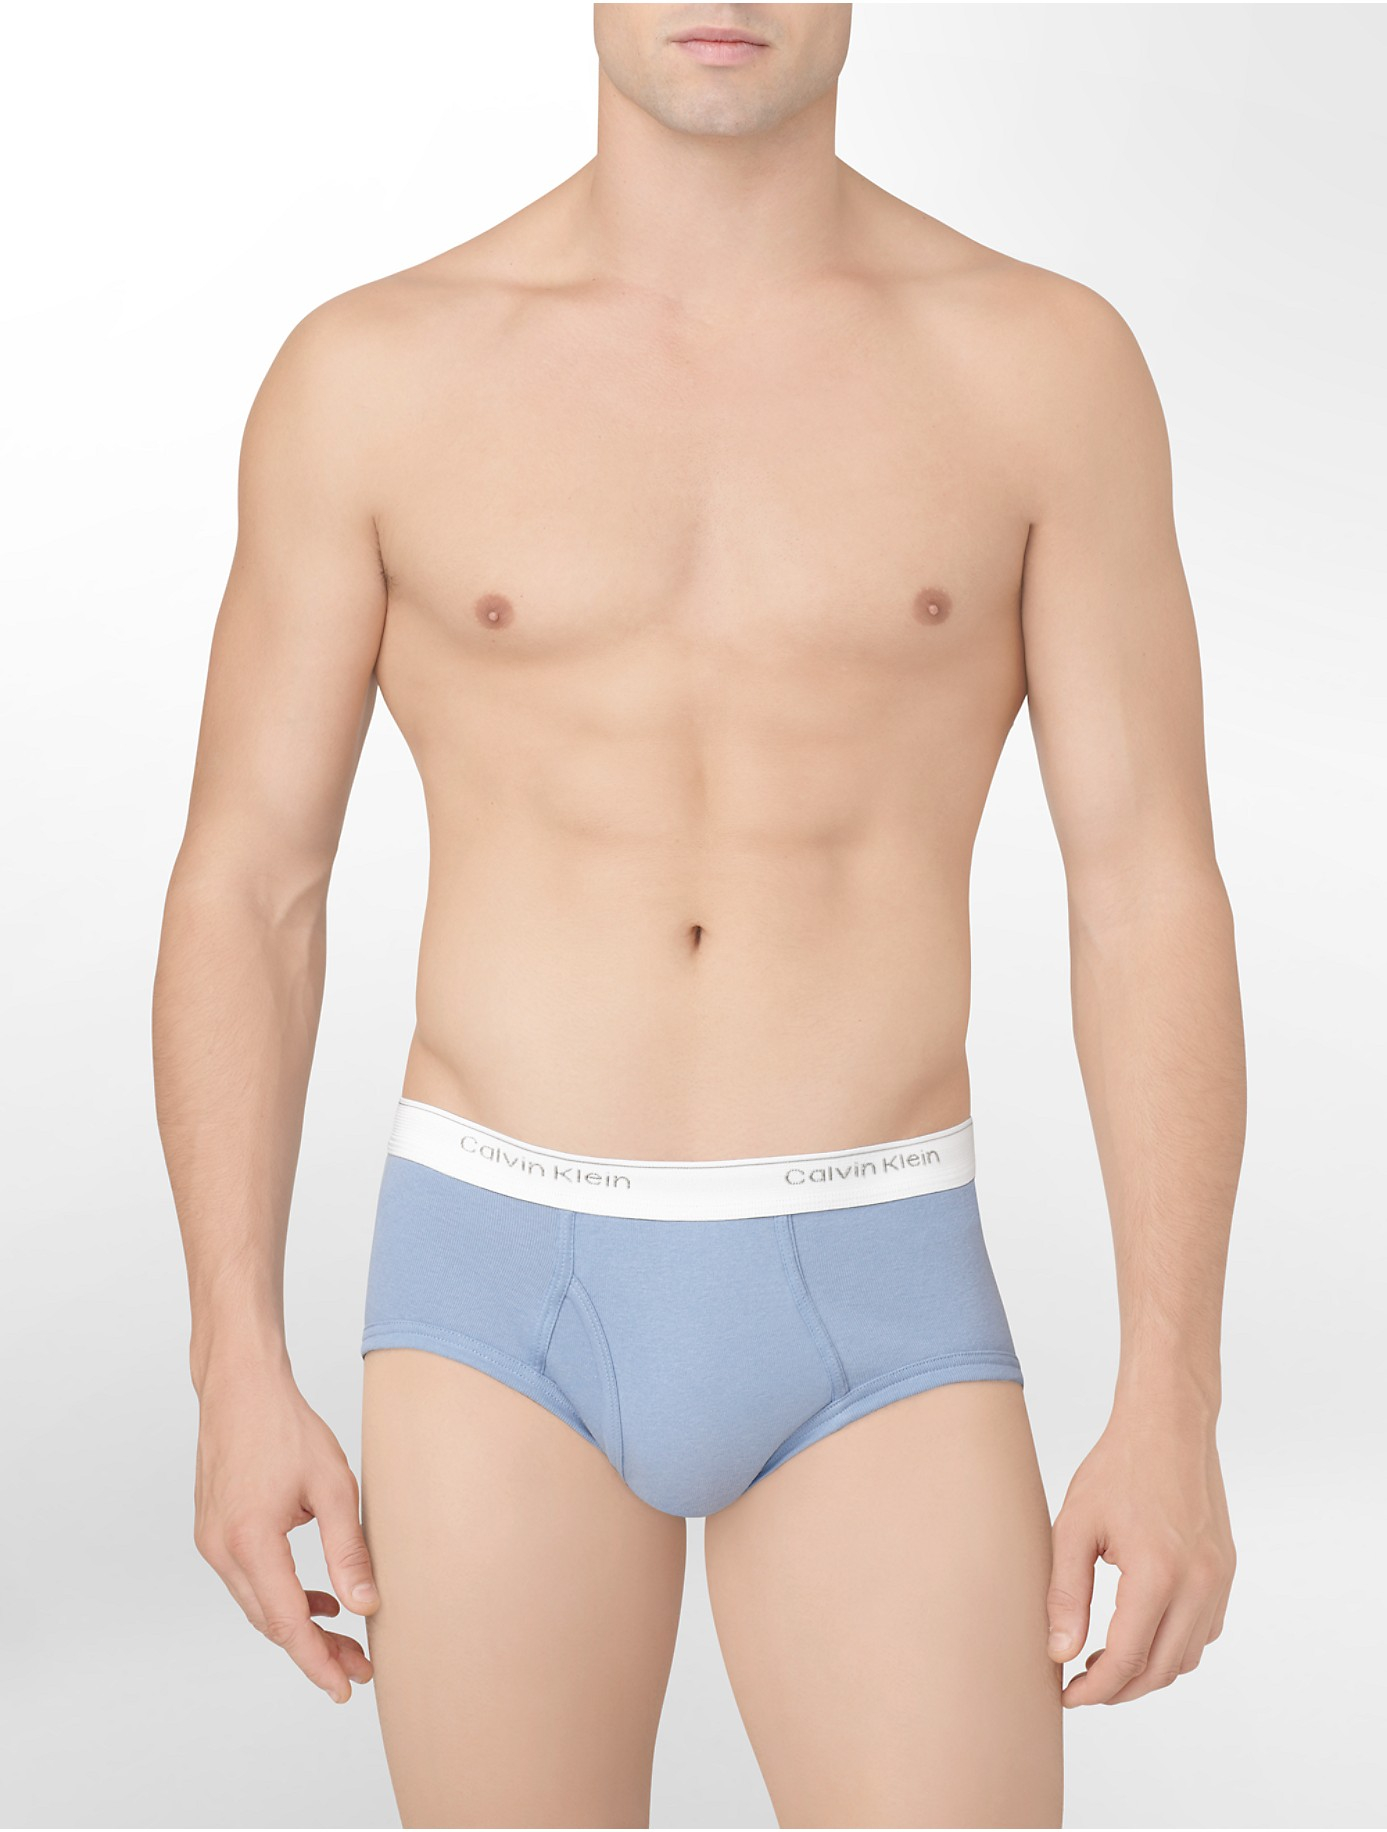 Calvin Klein Underwear Classics 3 Pack Brief in Blue for Men